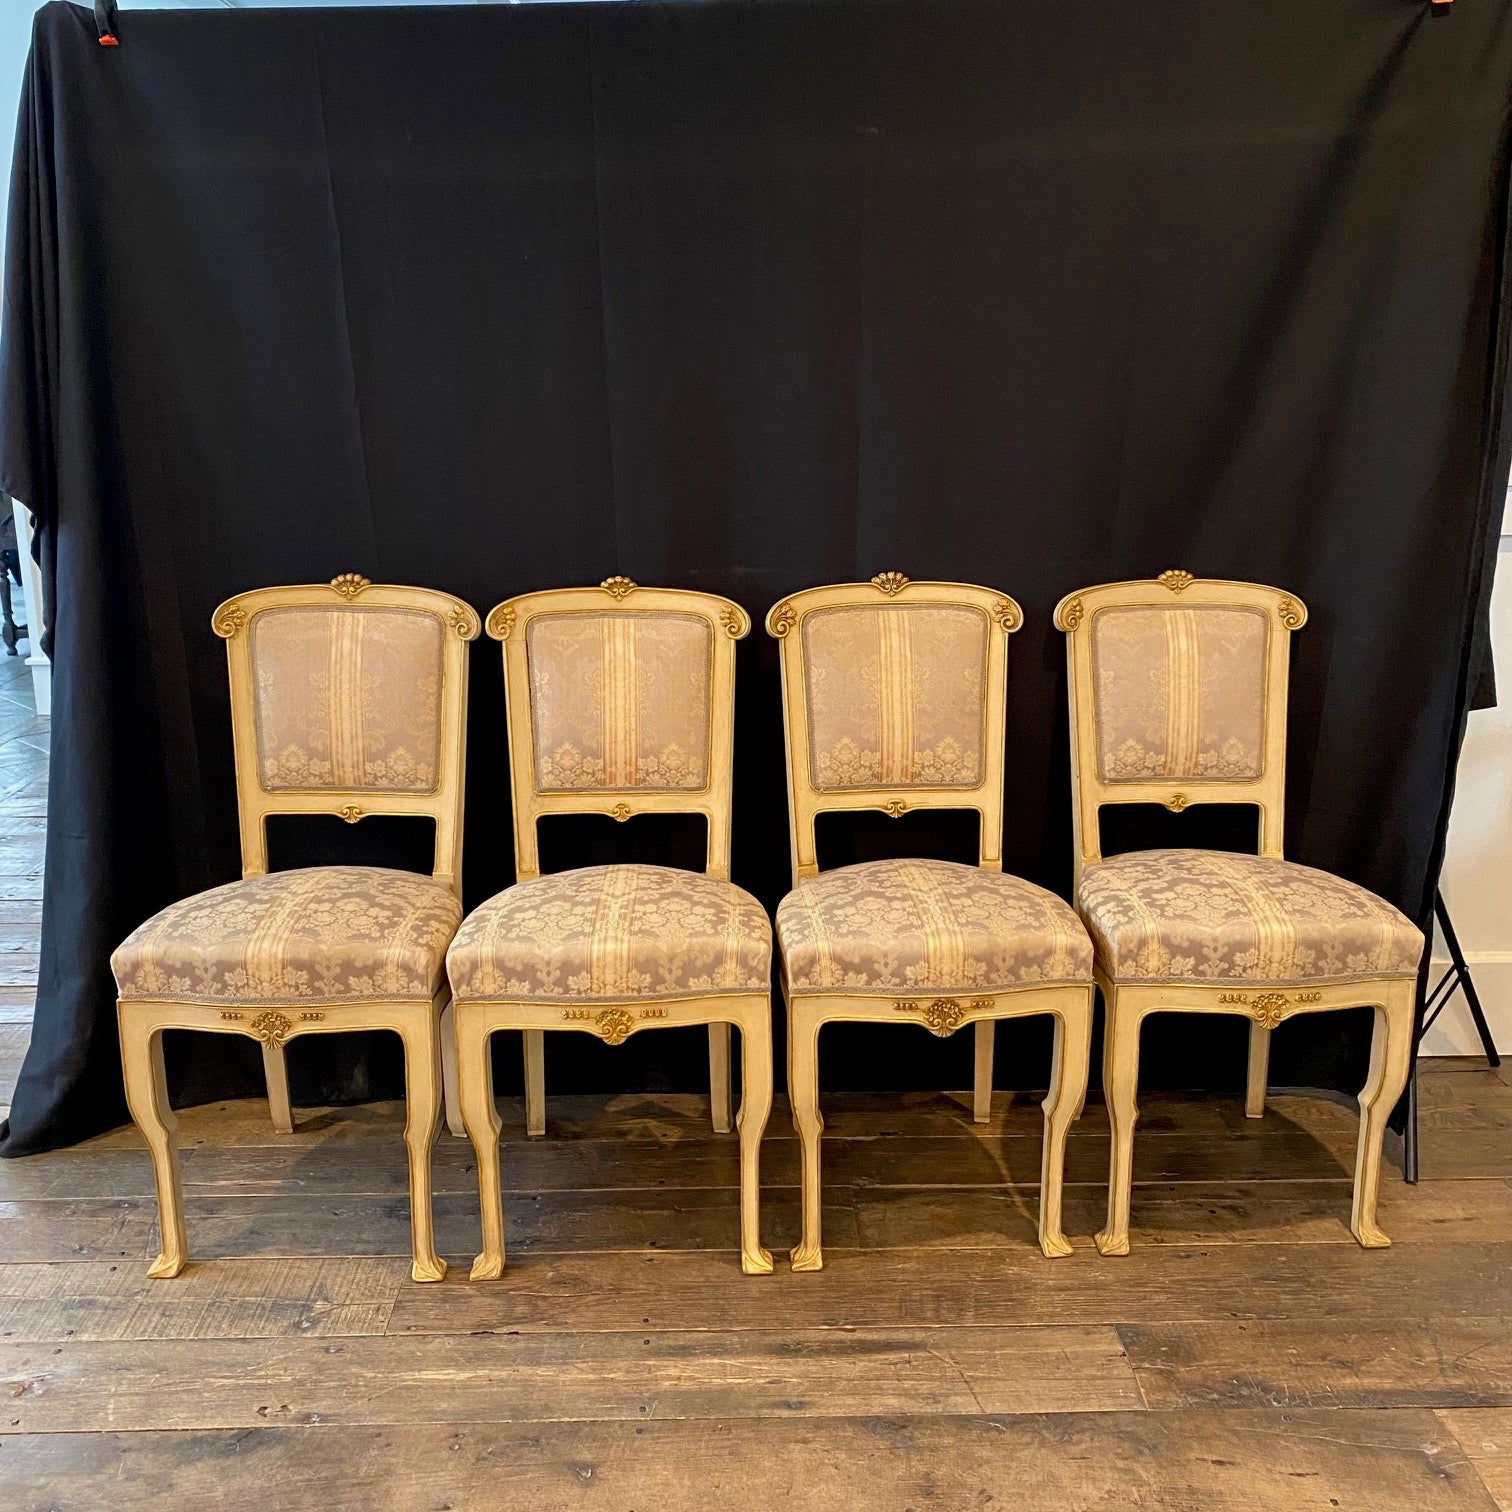 Ensemble de quatre belles et élégantes chaises d'appoint, chaises de salle à manger ou chaises d'accent Art Nouveau italien, toutes avec un magnifique tissu damassé d'origine à rayures sourdes.  Fait partie d'un ensemble de salon Art Nouveau complet